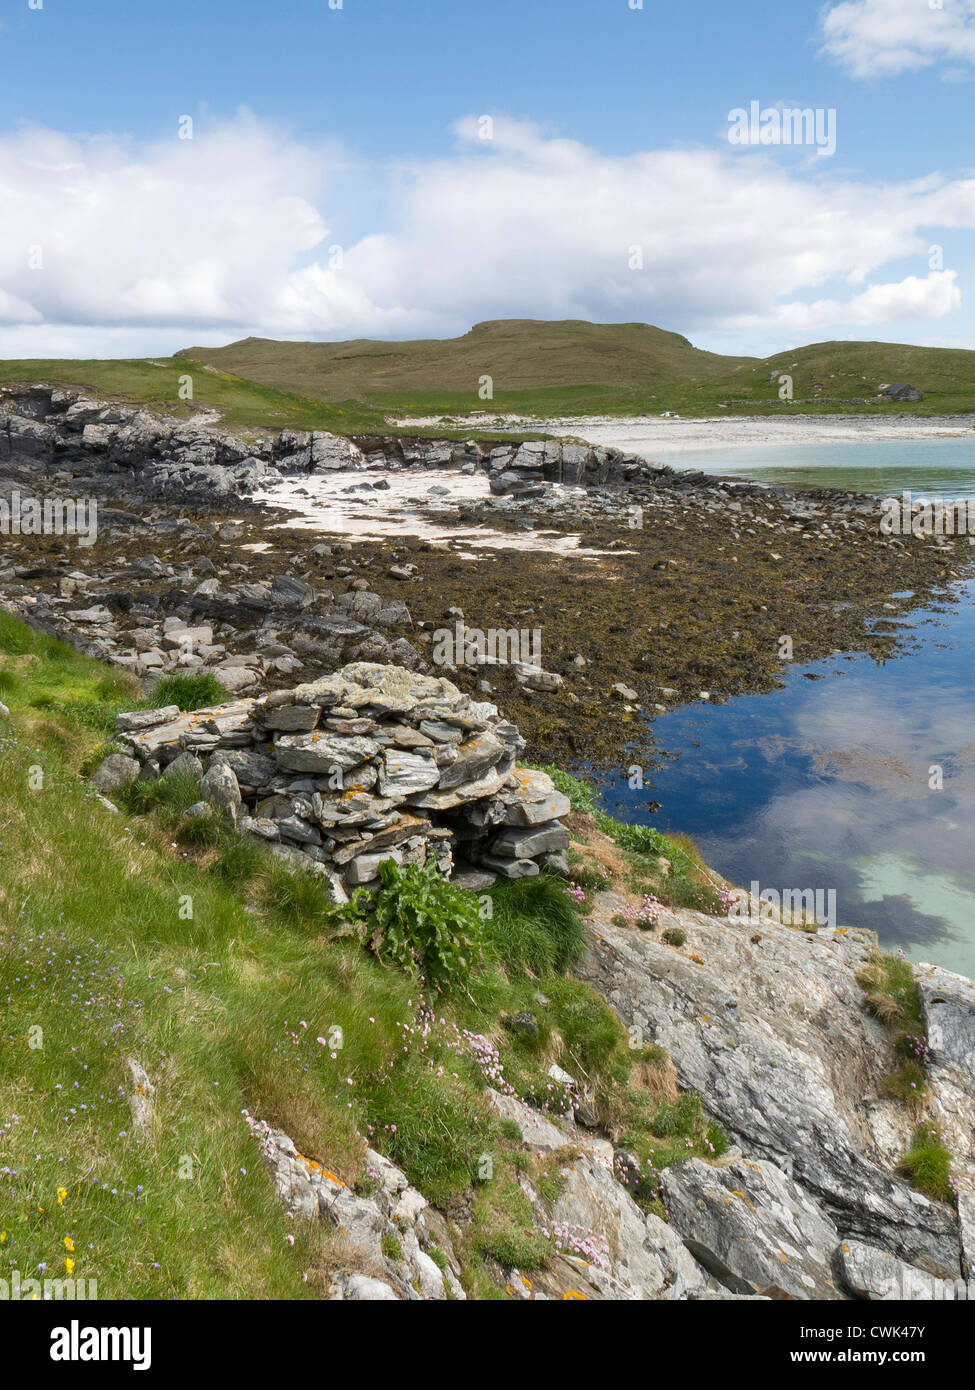 Piège à loutre désaffecté sur la côte de la partie continentale de Shetland. Juin 2012. Banque D'Images